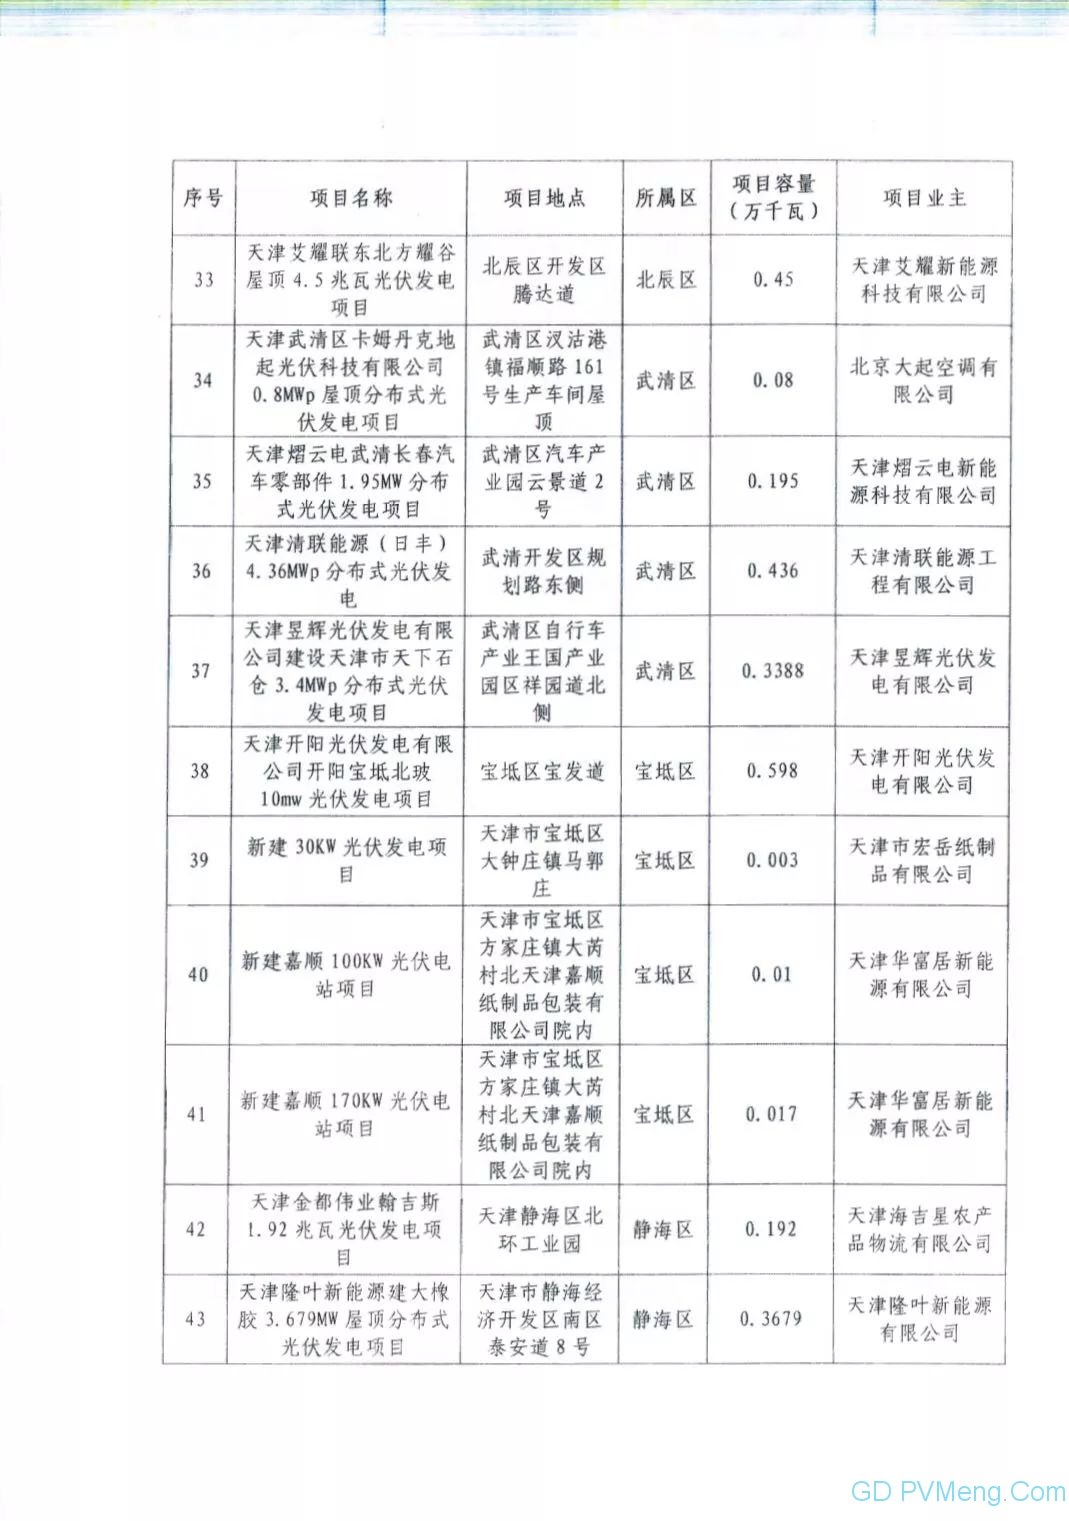 72个 44.002万千瓦||国网天津市电力公司关于2019年拟申报国家竞价补贴光伏项目电力送出和消纳意见20190625